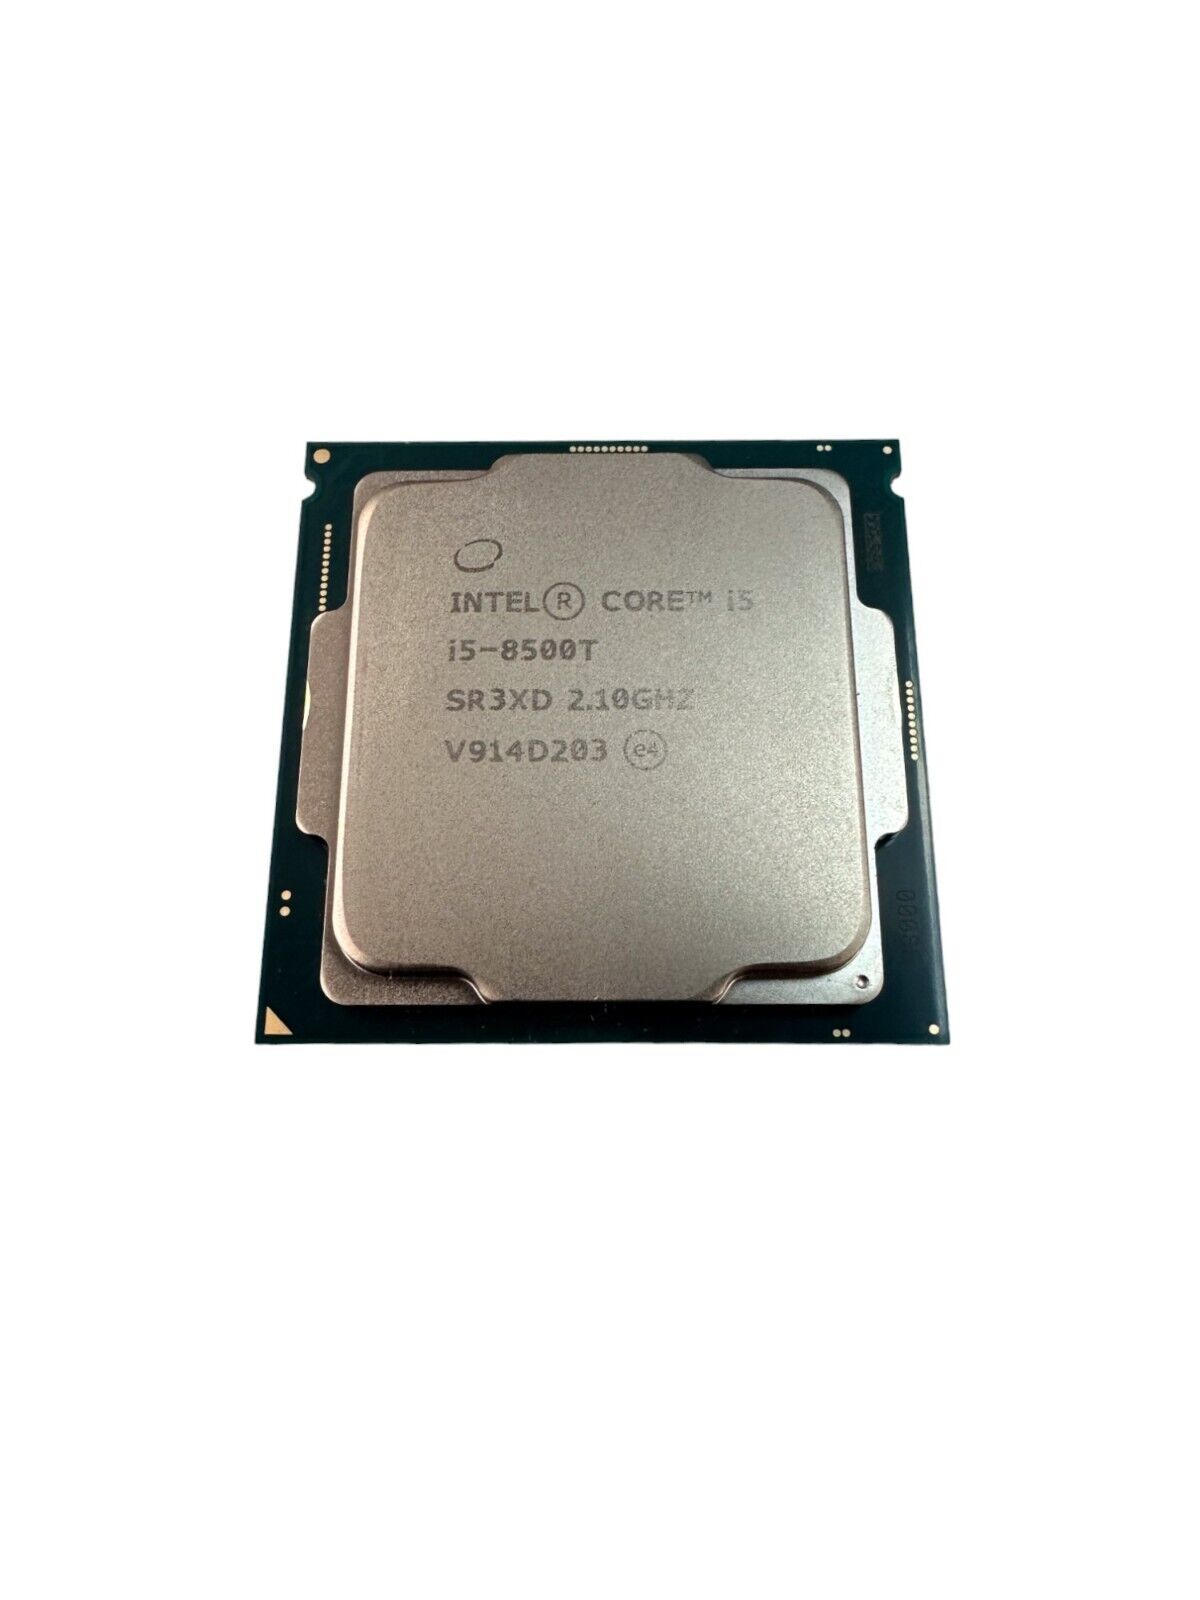 Intel Core i5-8500T @2.10GHz 6-Core CPU For Dell/HP Mini Desktop Computers SR3XD